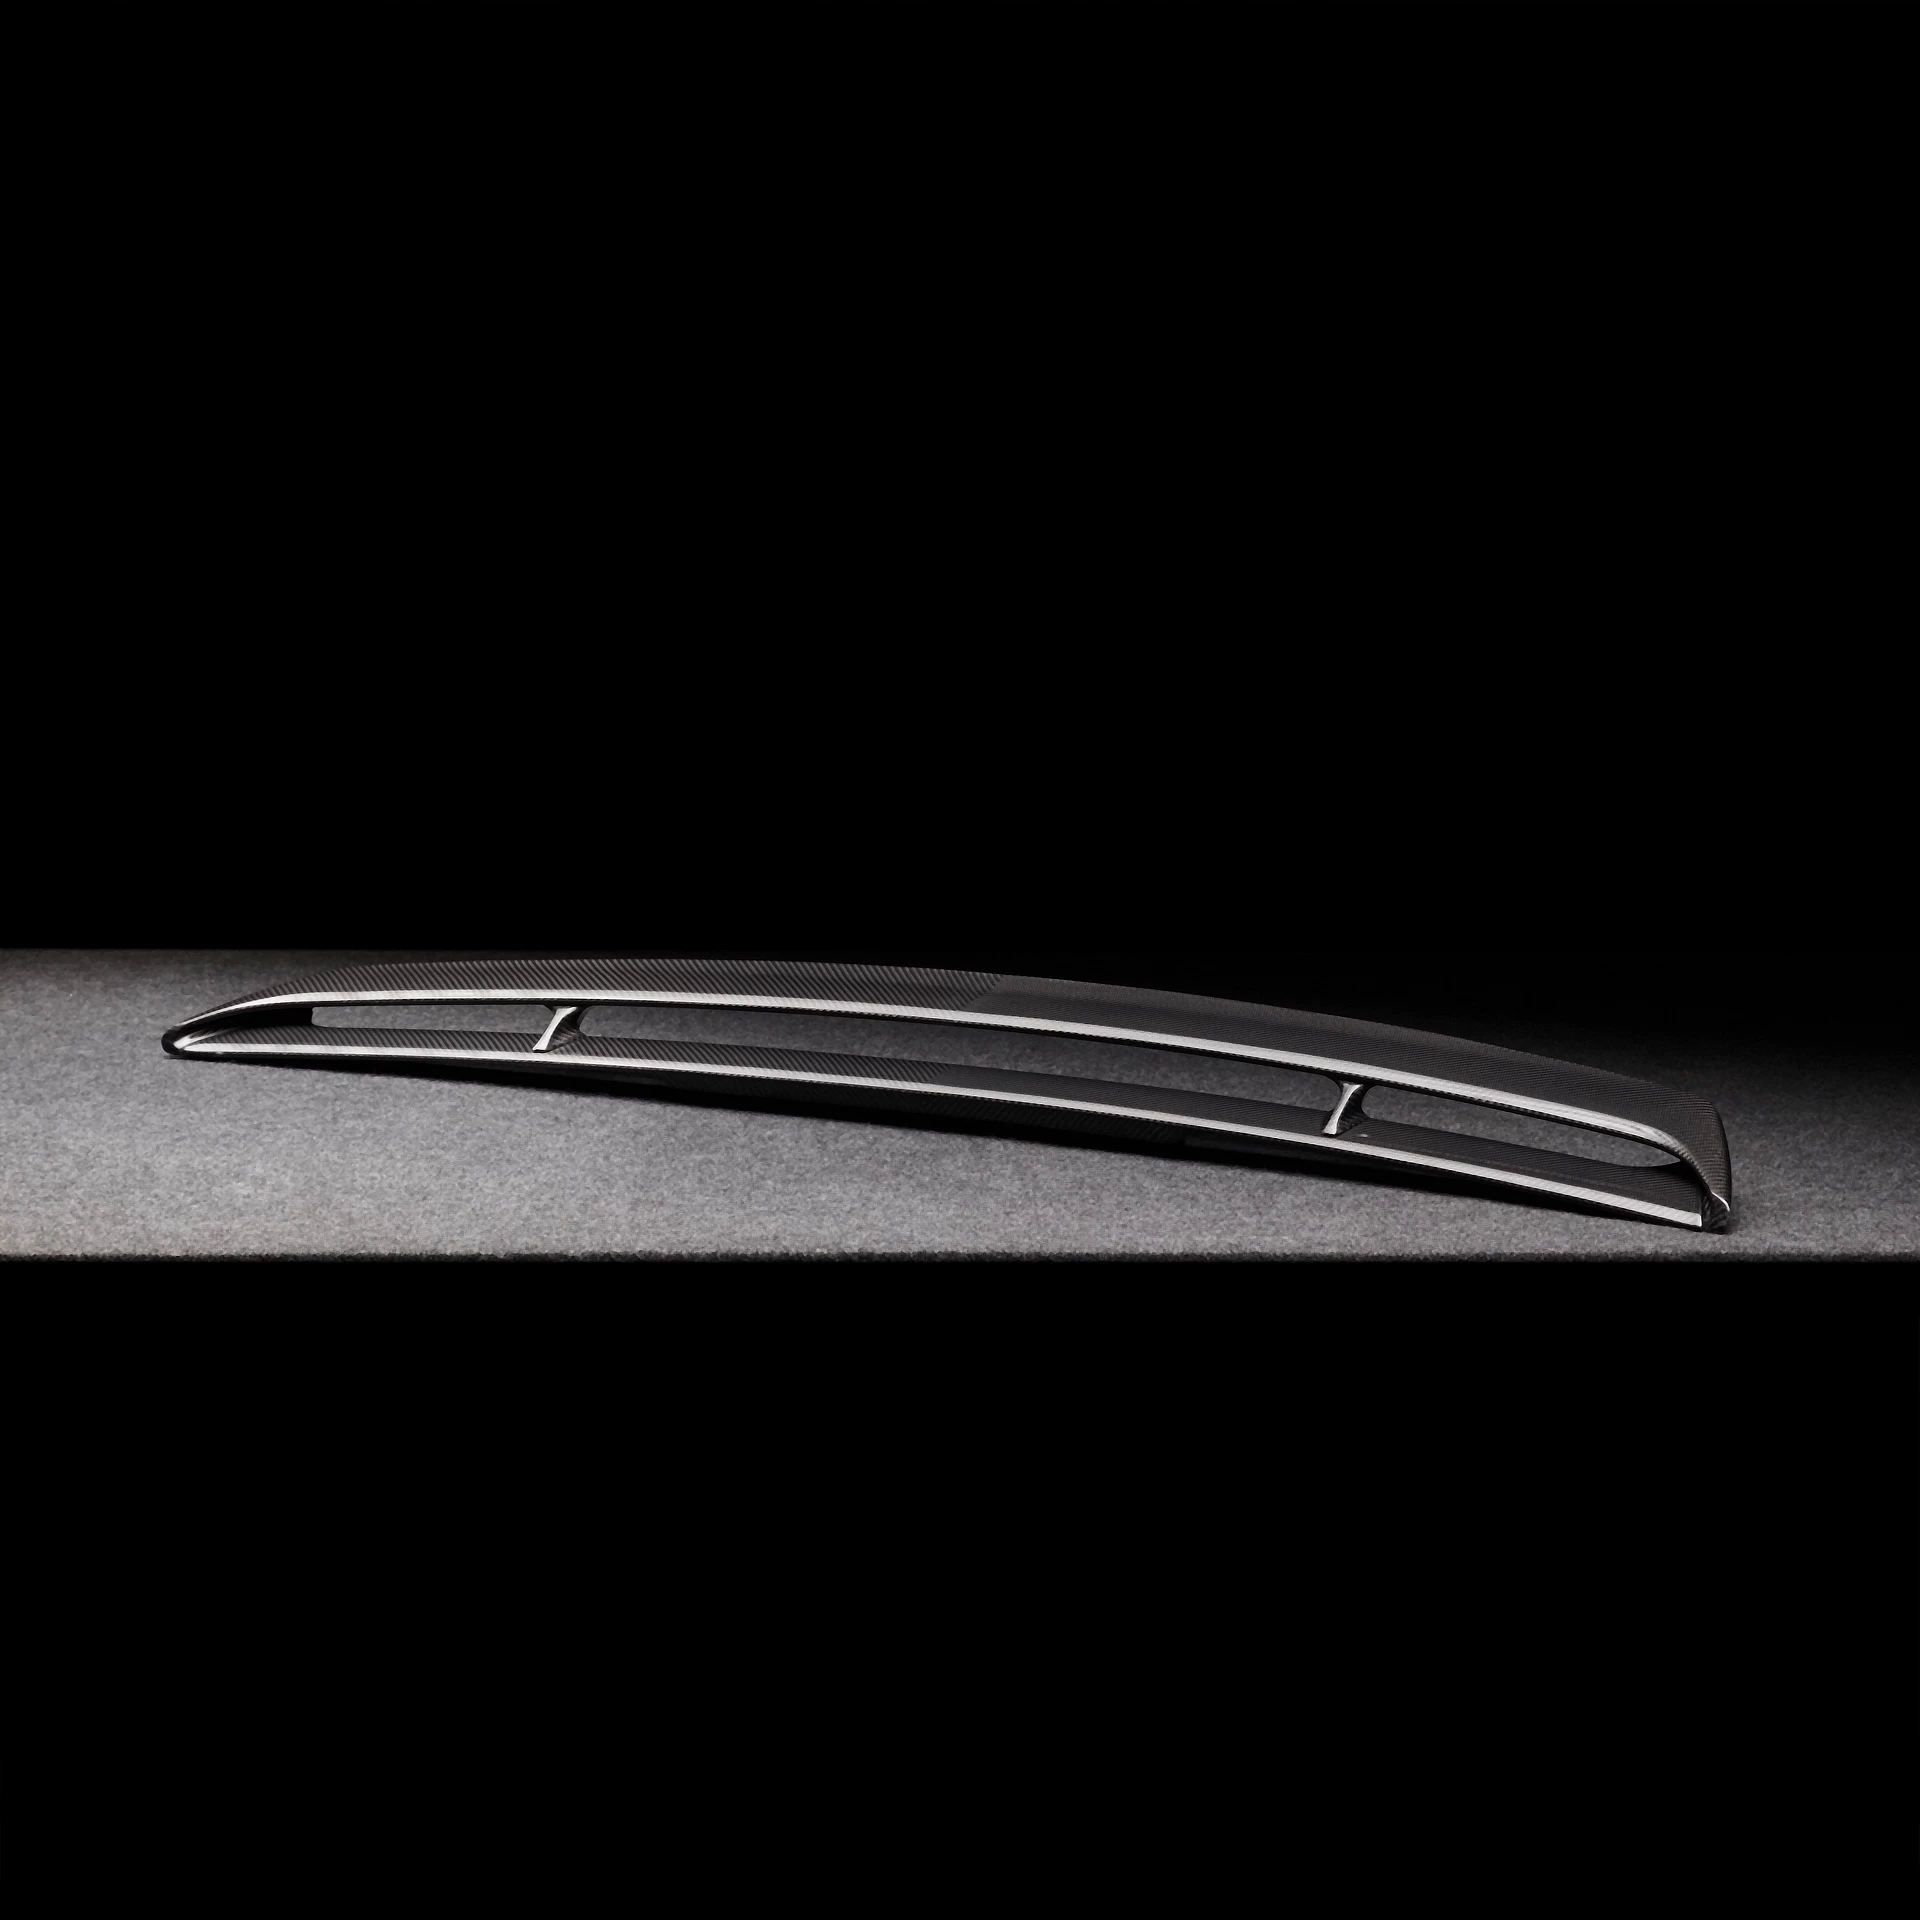 Bestellen Sie einen aerodynamischen Spoiler für den Bentley Bentayga MLB bentayga-speed-edition-12 6.0-LITER TWIN TURBO W12 TYROLEAN /2020/2021/2022/2023/2024